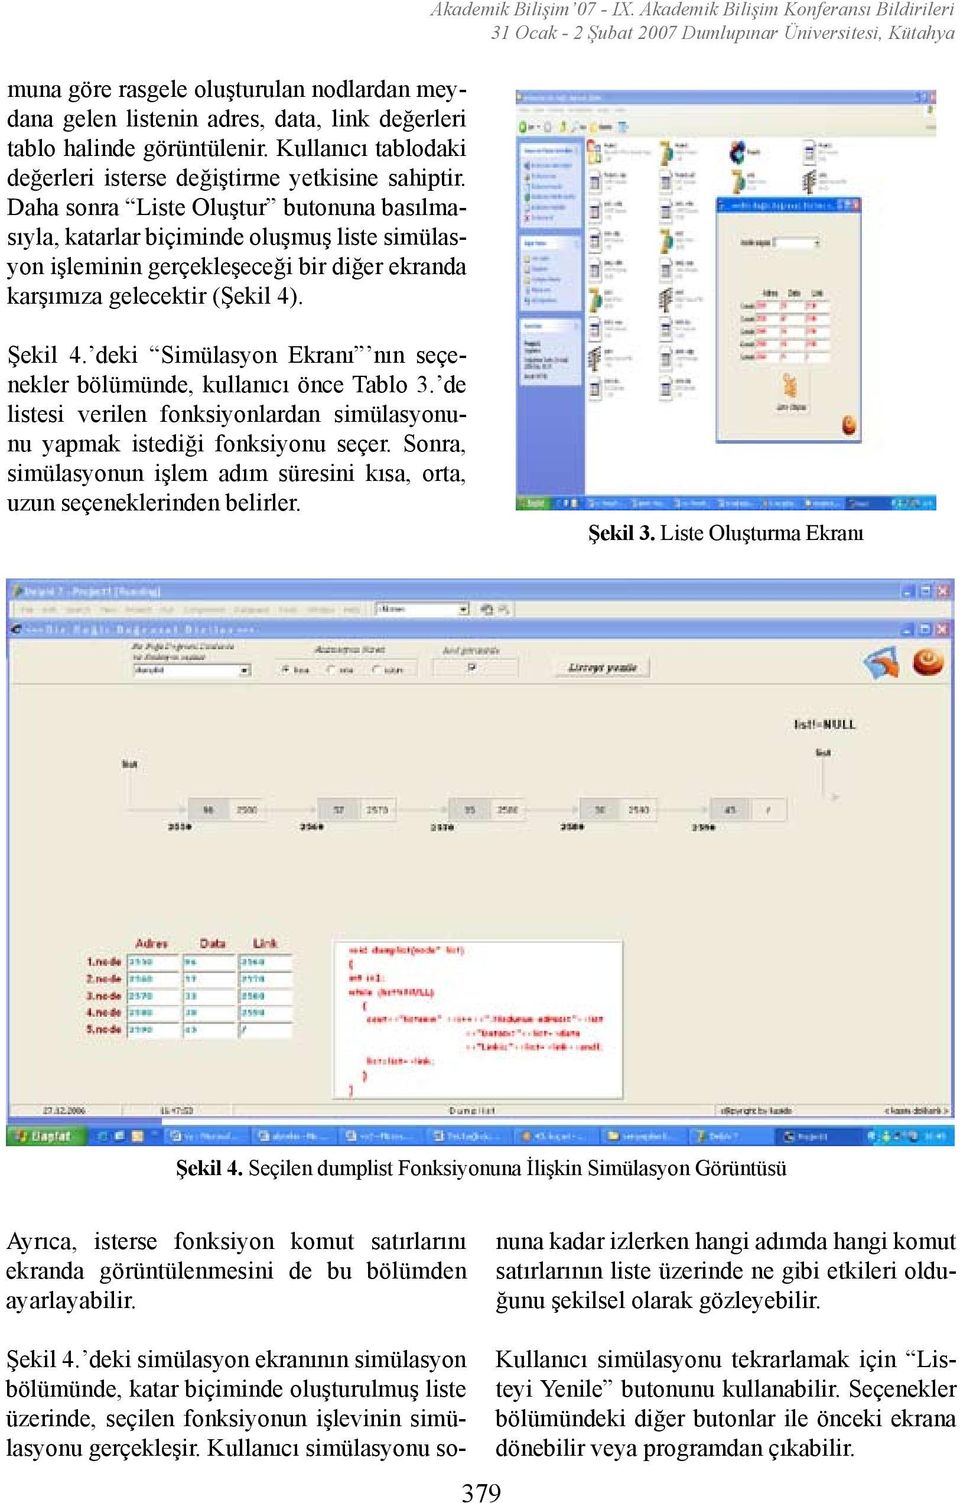 Akademik Bilişim Konferansı Bildirileri 31 Ocak - 2 Şubat 2007 Dumlupınar Üniversitesi, Kütahya Şekil 4. deki Simülasyon Ekranı nın seçenekler bölümünde, kullanıcı önce Tablo 3.